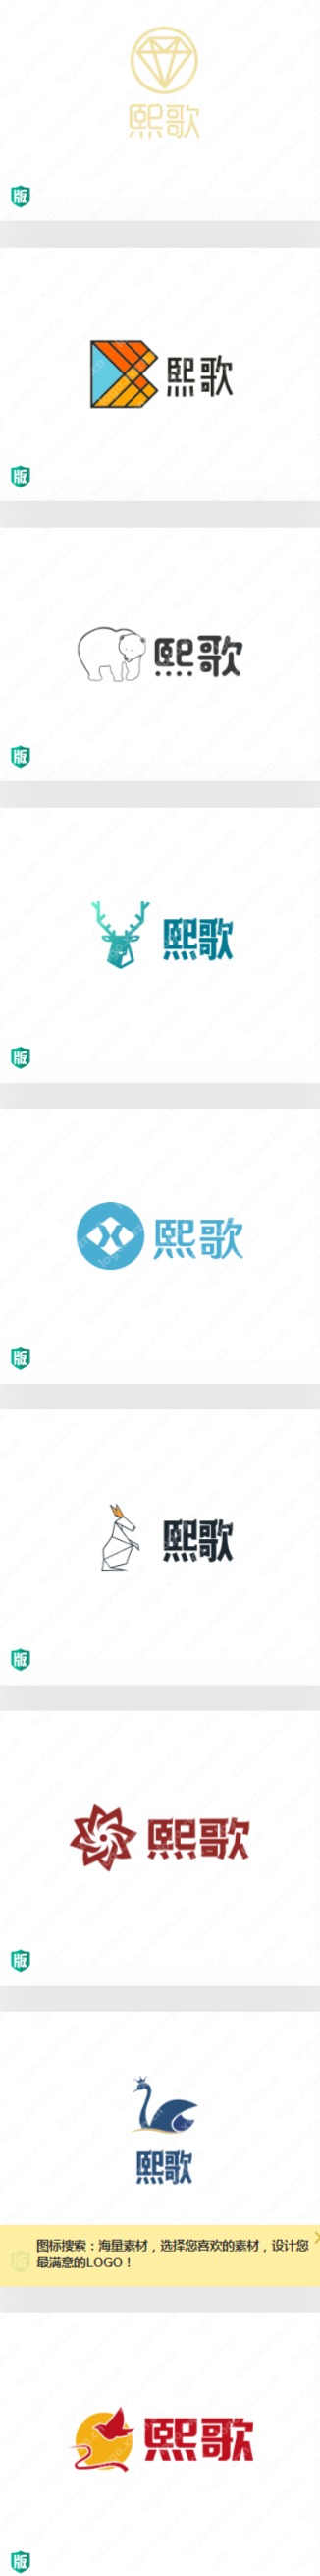 精选“熙歌”logo设计集锦 不同风格设计